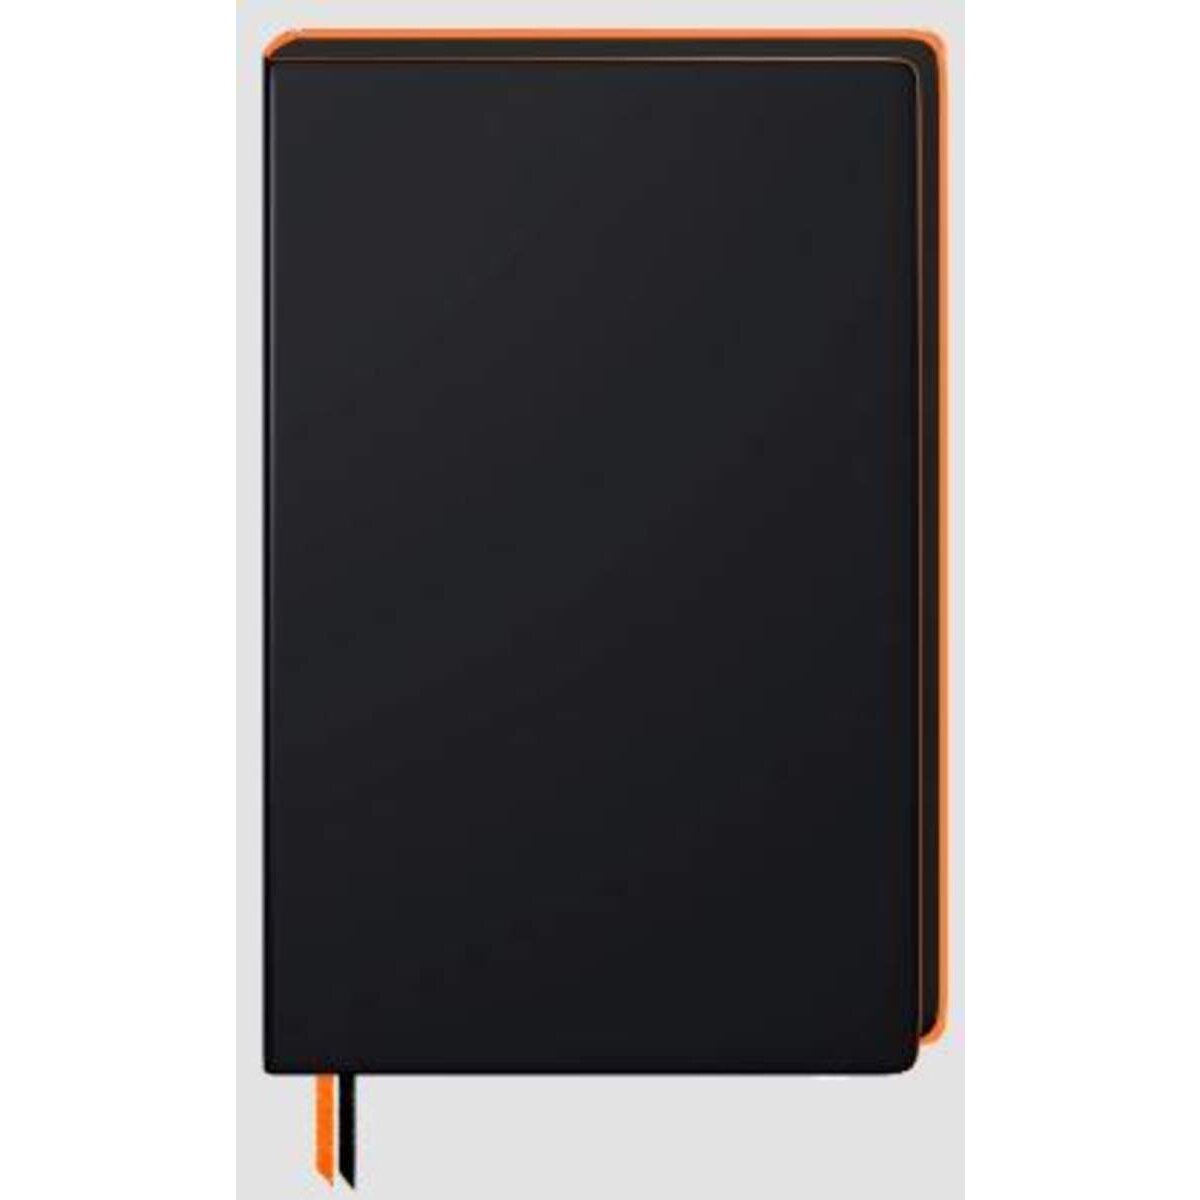 BRUNNEN Notizbuch Premium Neon A5 dotted schwarz mit Neonkante orange